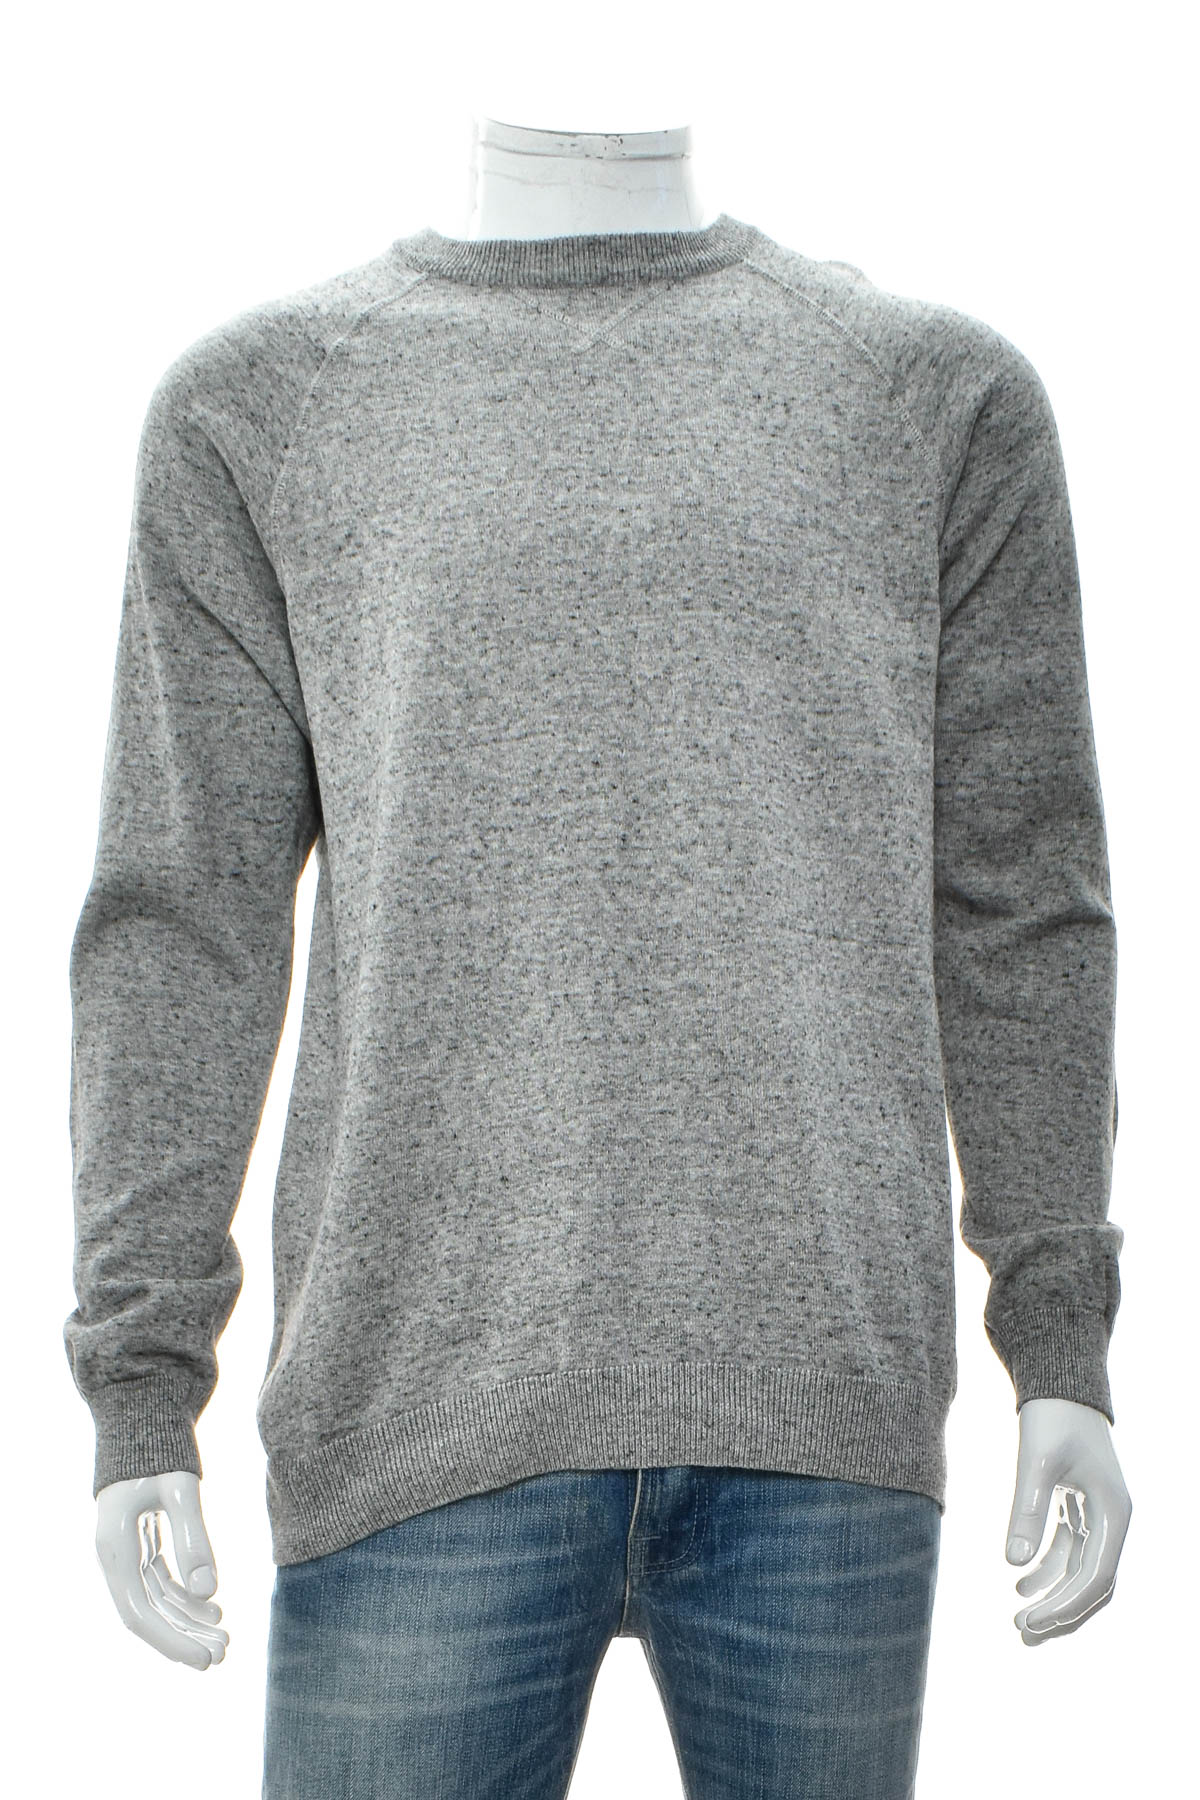 Men's sweater - H&M - 0